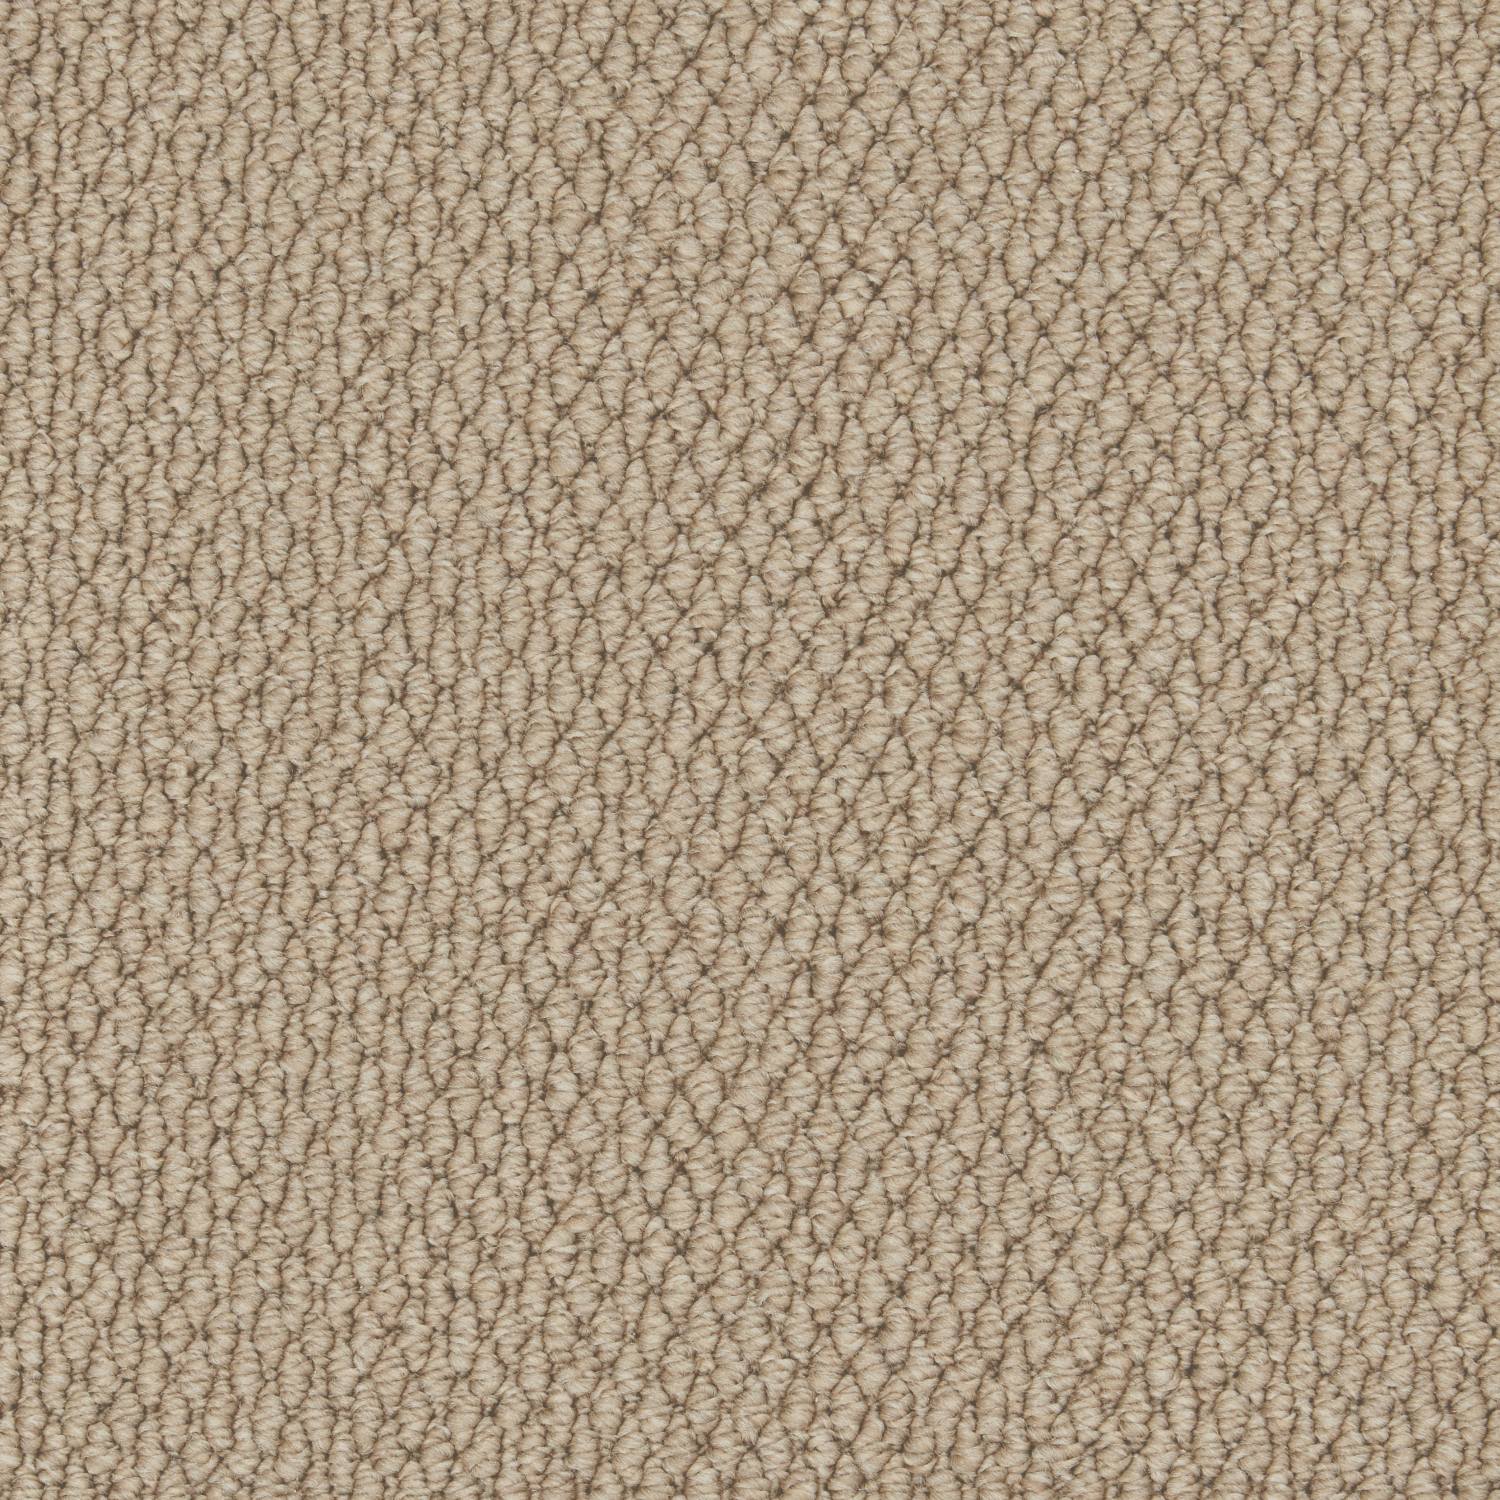 Rural Textures Loop Carpet - Roast Coffee Weave